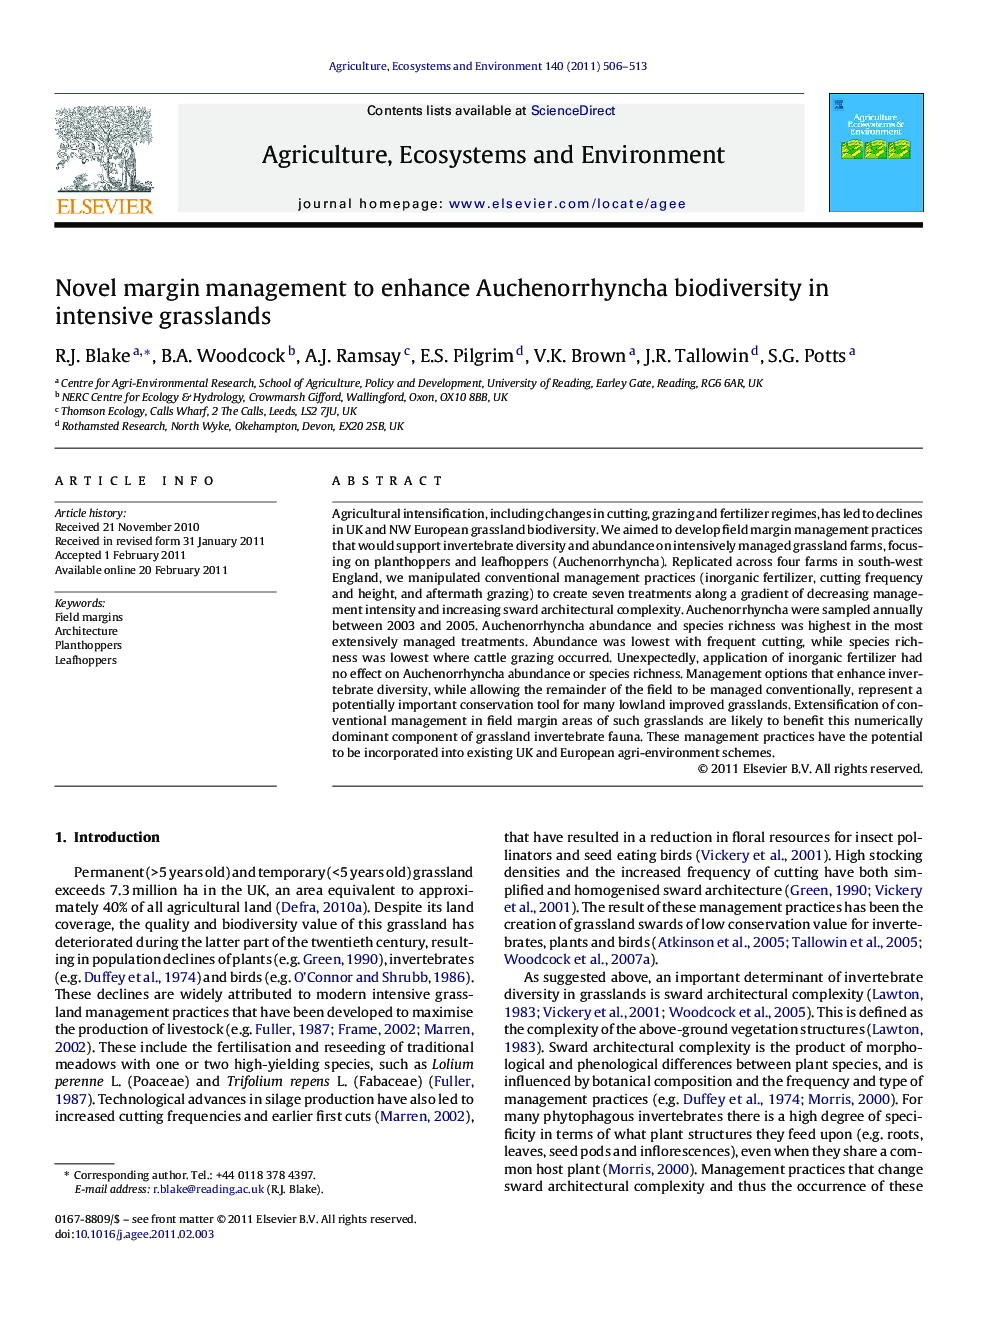 Novel margin management to enhance Auchenorrhyncha biodiversity in intensive grasslands